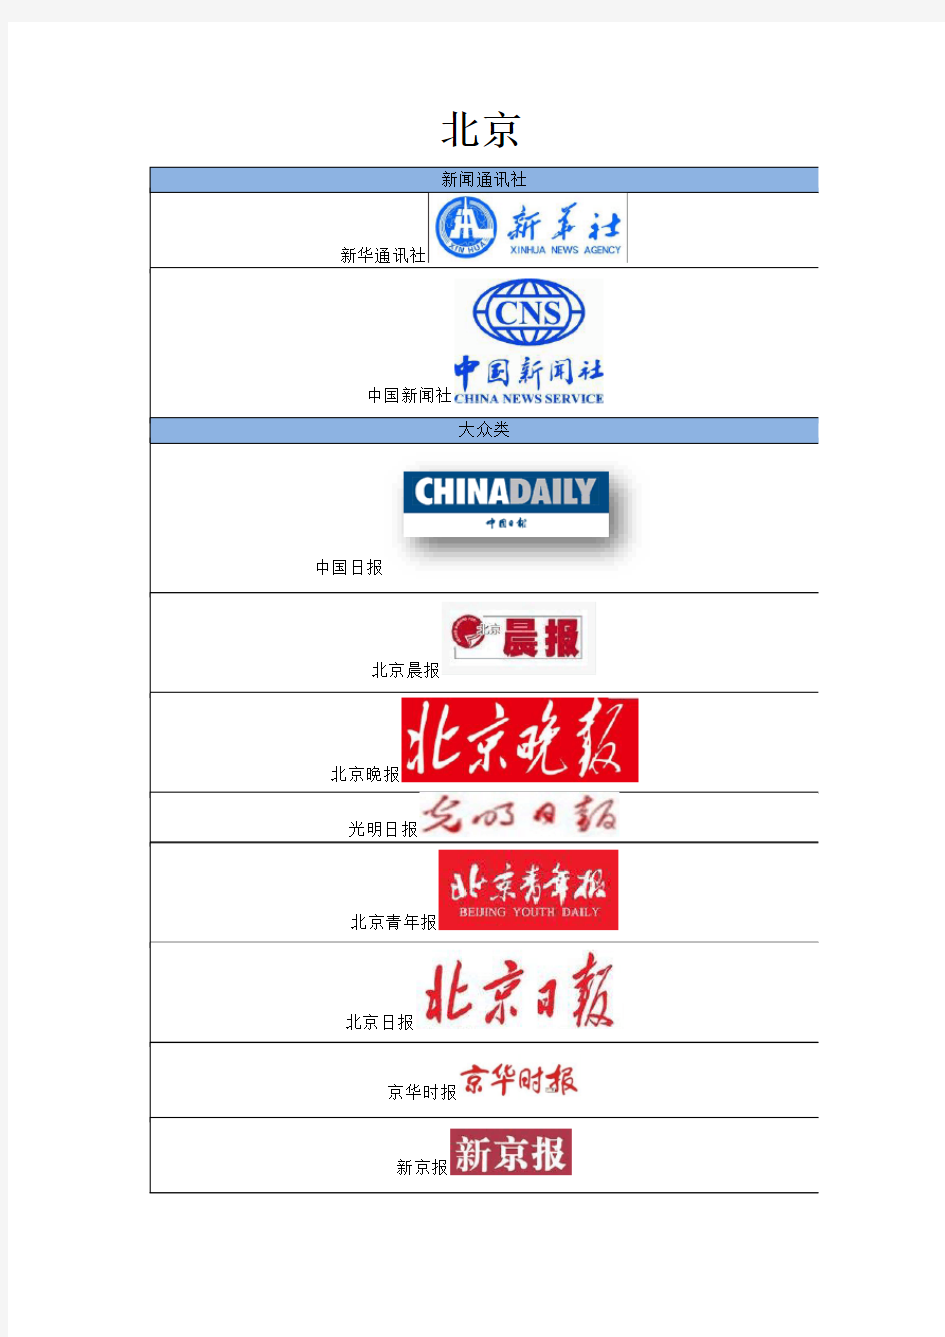 中国各地媒体名单(报纸、网站、电台)Logo大全